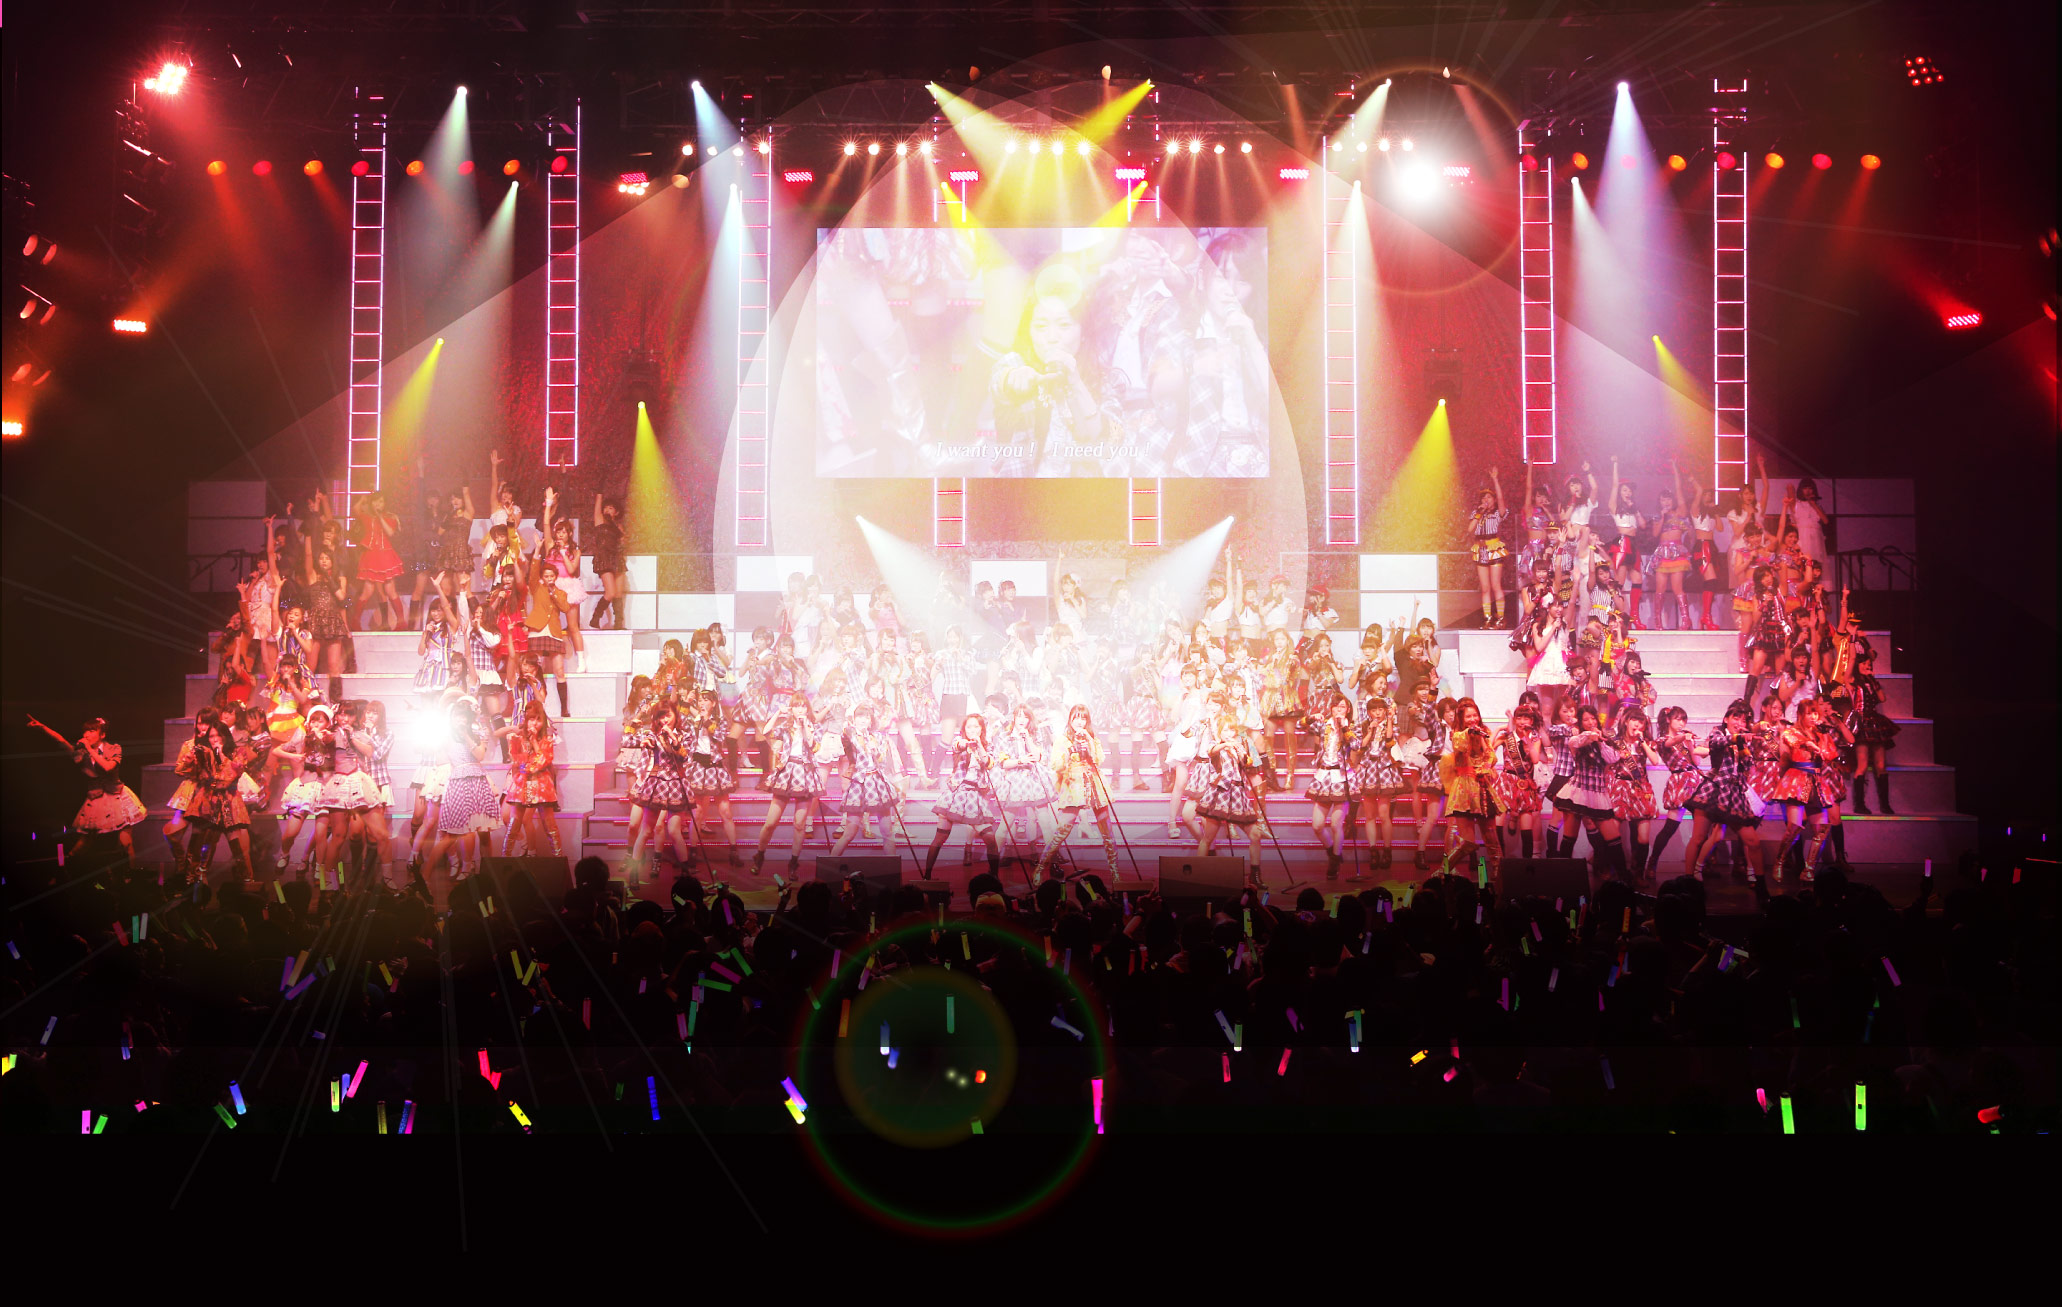 AKB48 リクエストアワーセットリストベスト10352015（110～1ver.） スペシャルBOX(5枚組DVD) w17b8b5